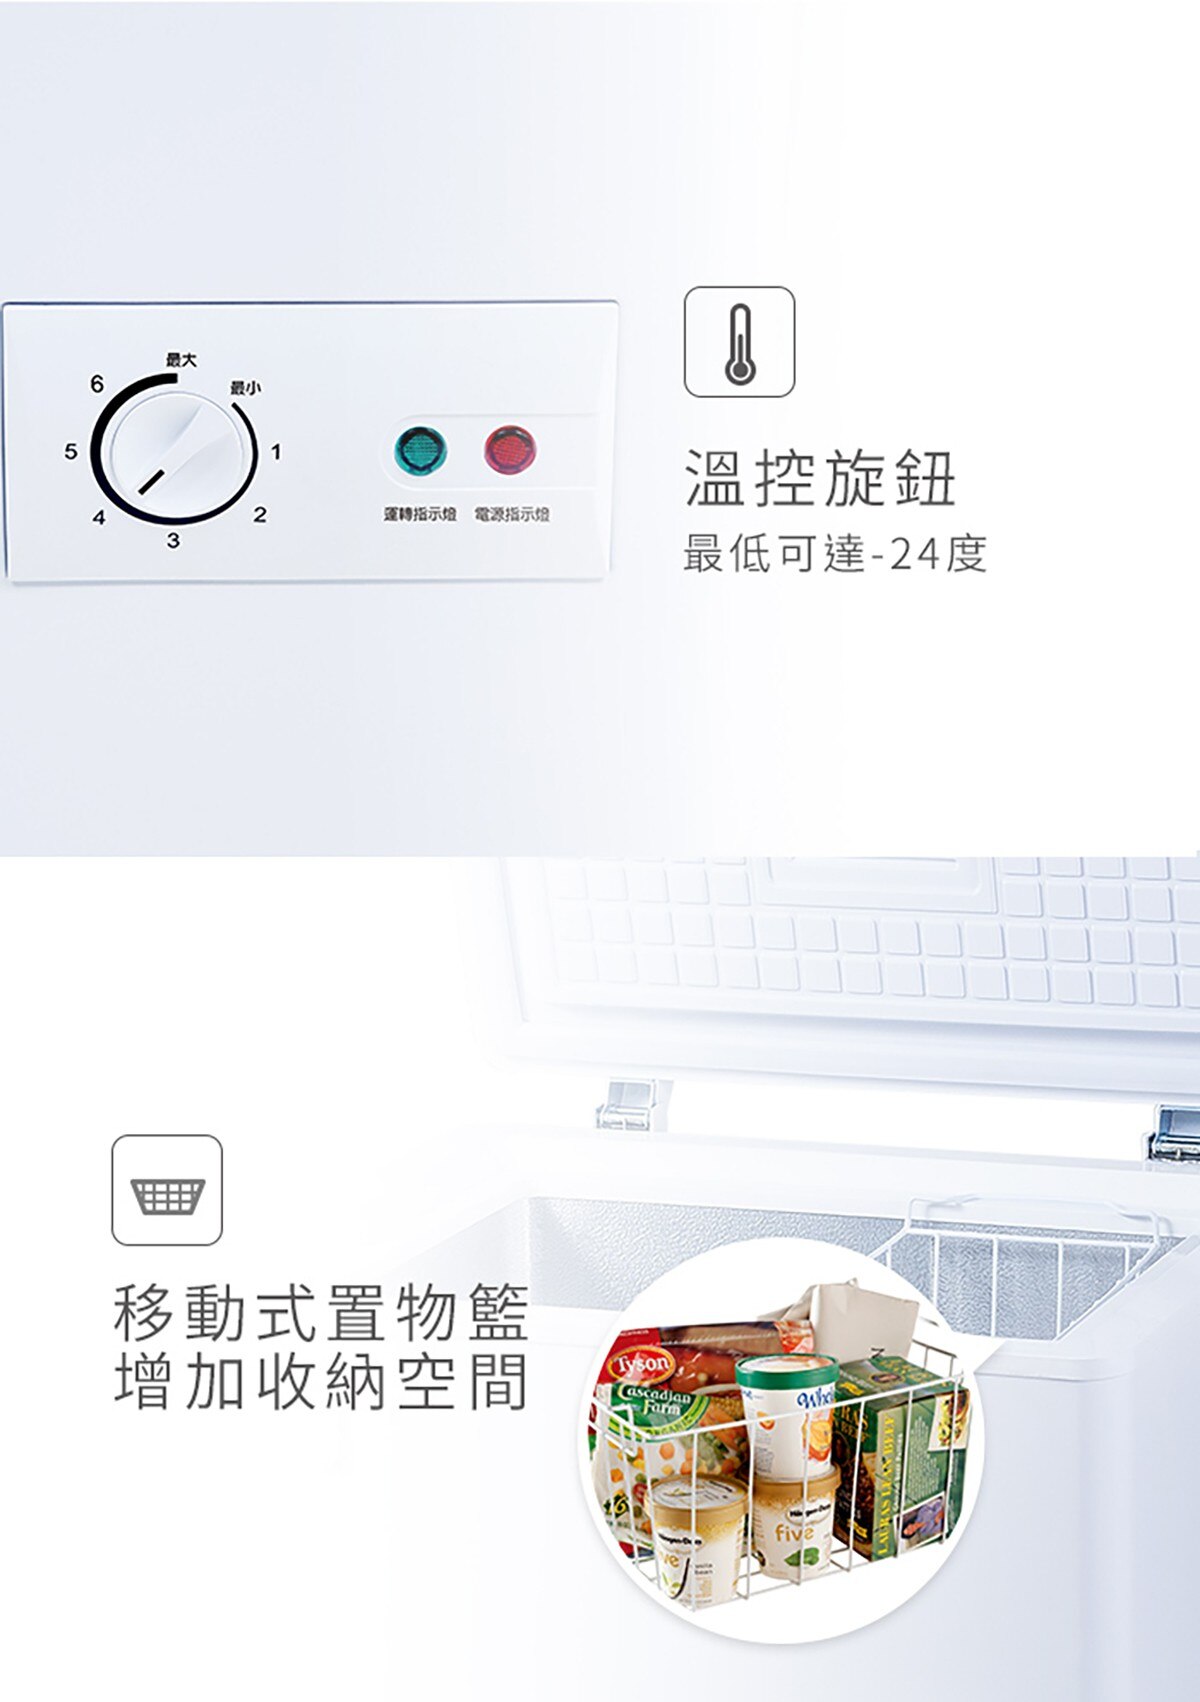 100公升商用臥式冷凍櫃,溫控旋鈕,最低可達-24度,移動式置物籃,增加收納空間.